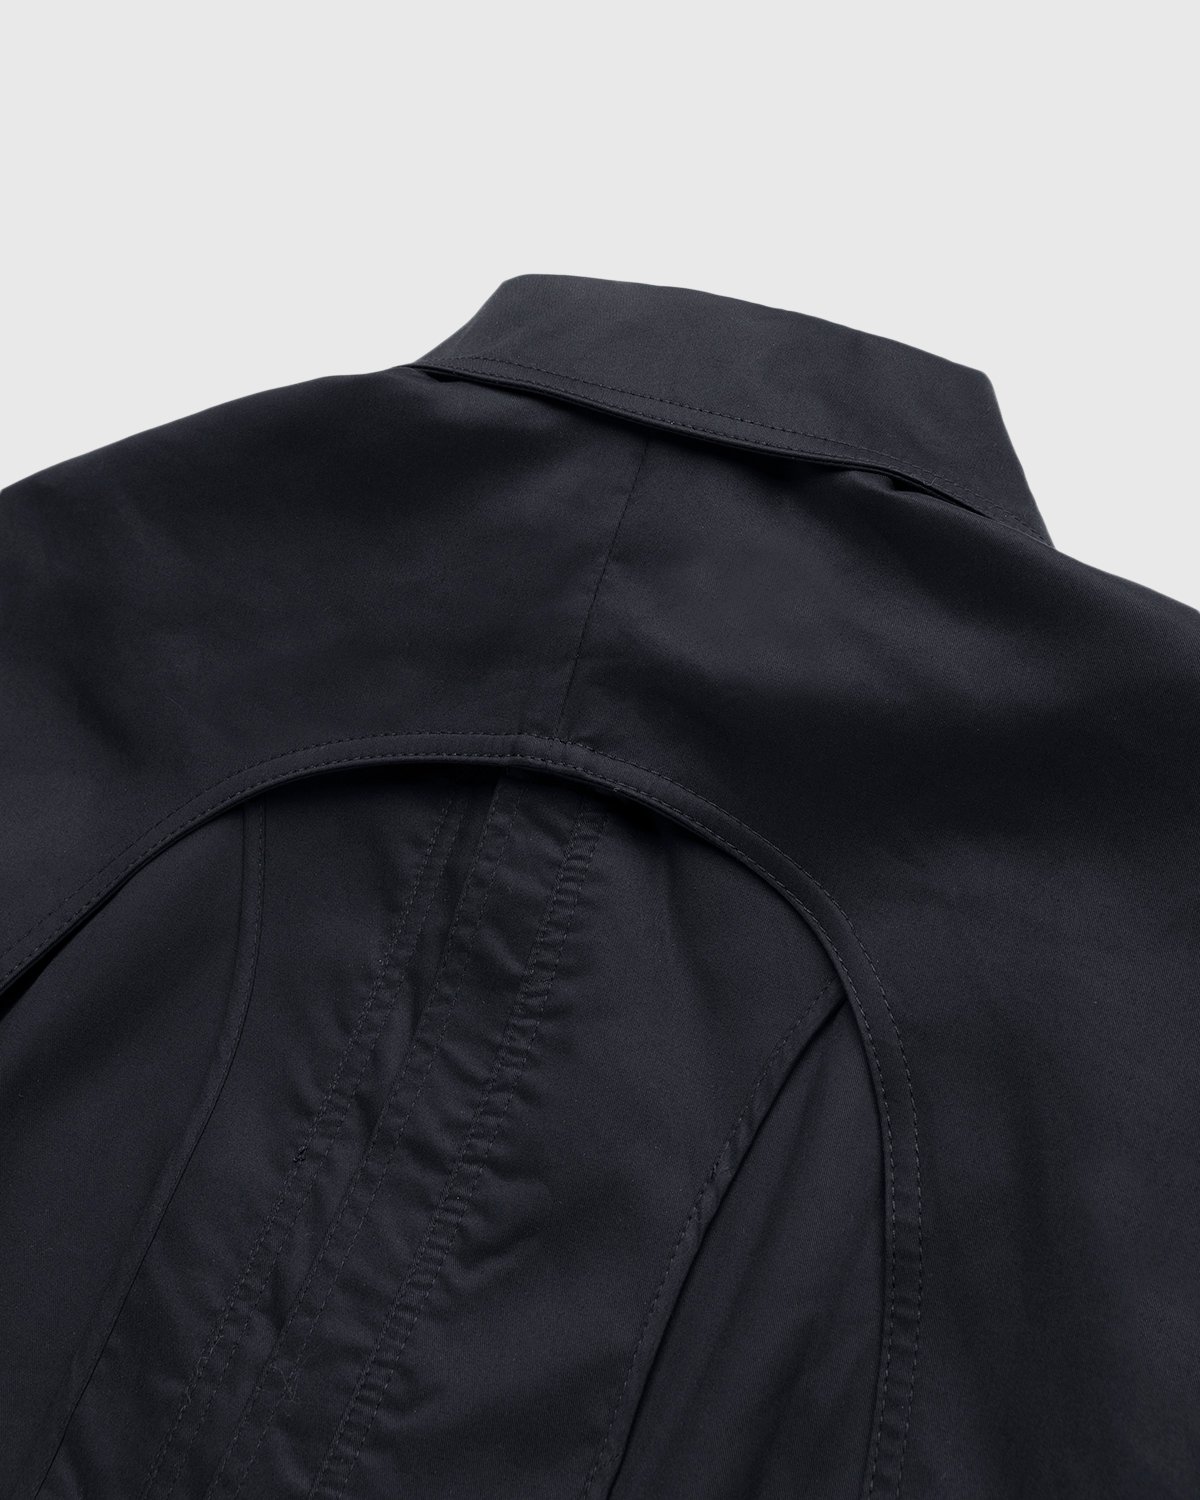 Lourdes New York - Backless Jacket Black - Clothing - Black - Image 3